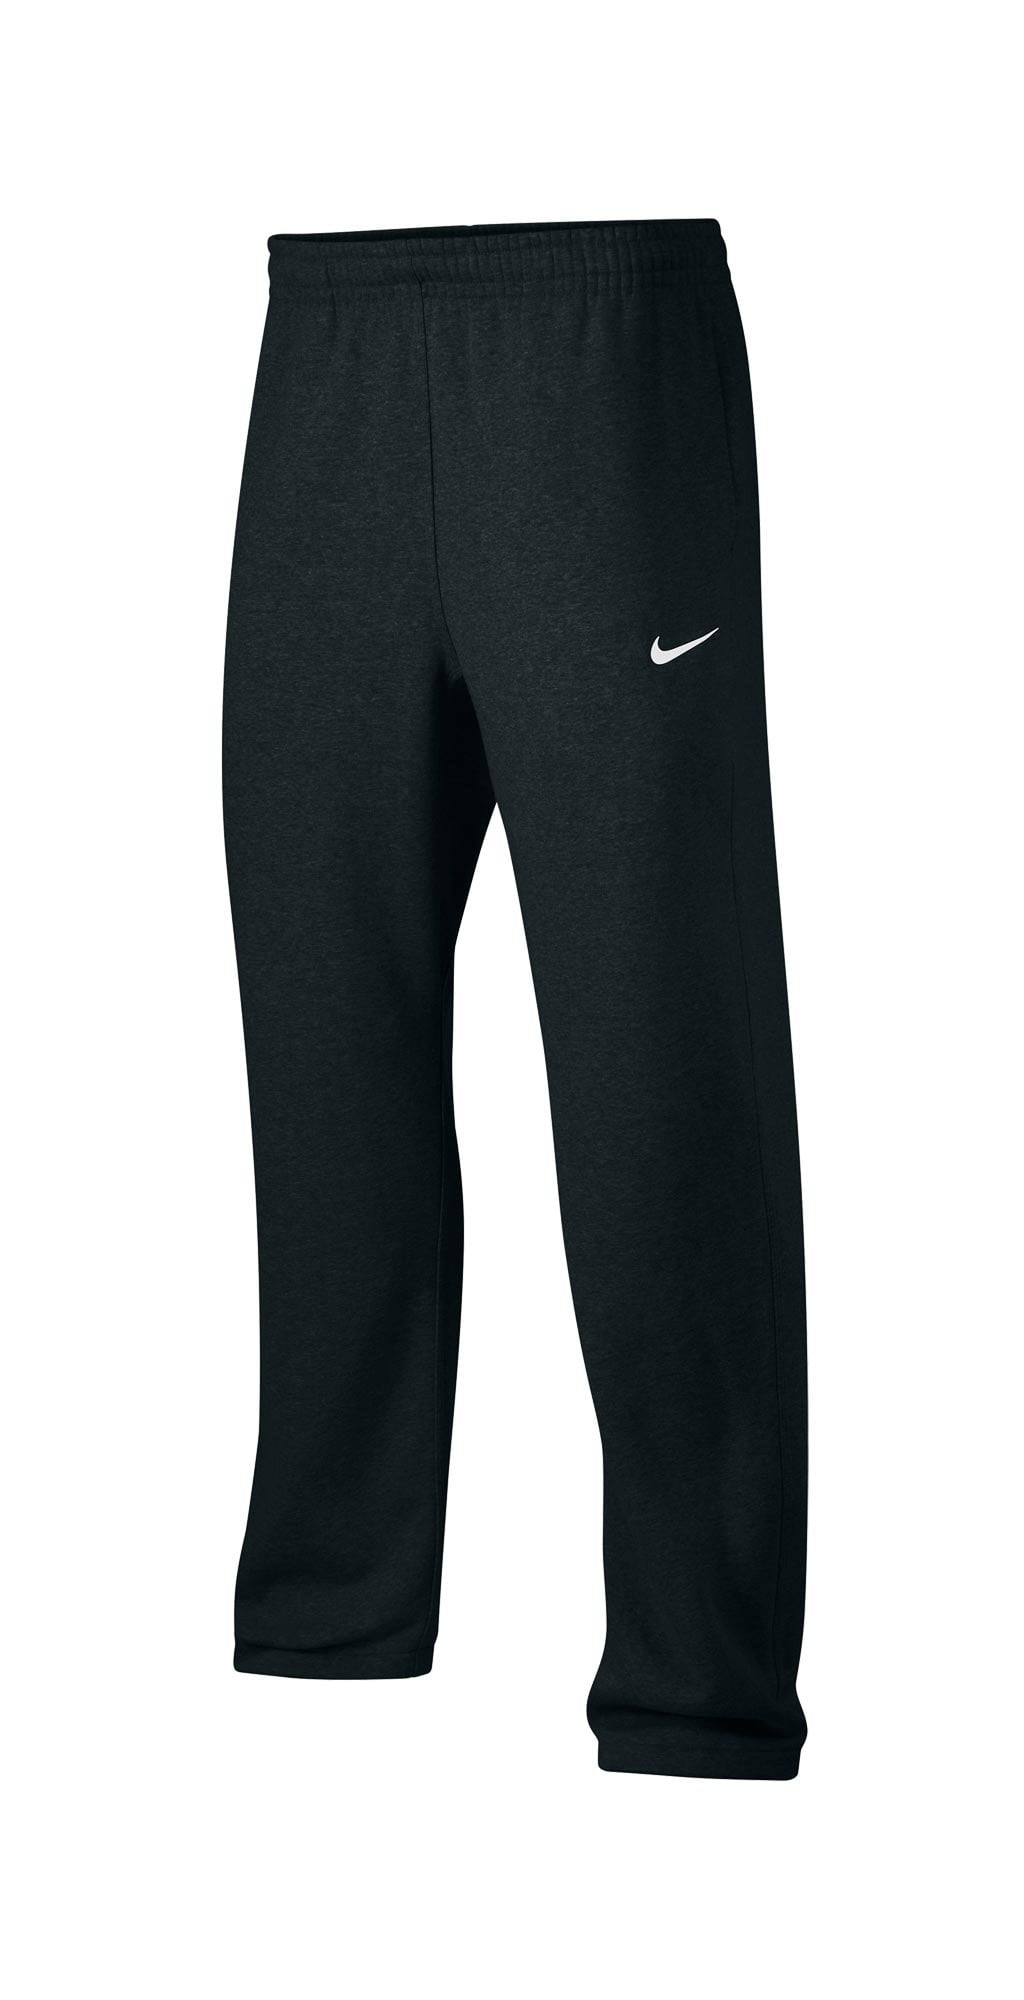 Nike Men's Active Fleece Sweat Pants Black 826425 010 (l